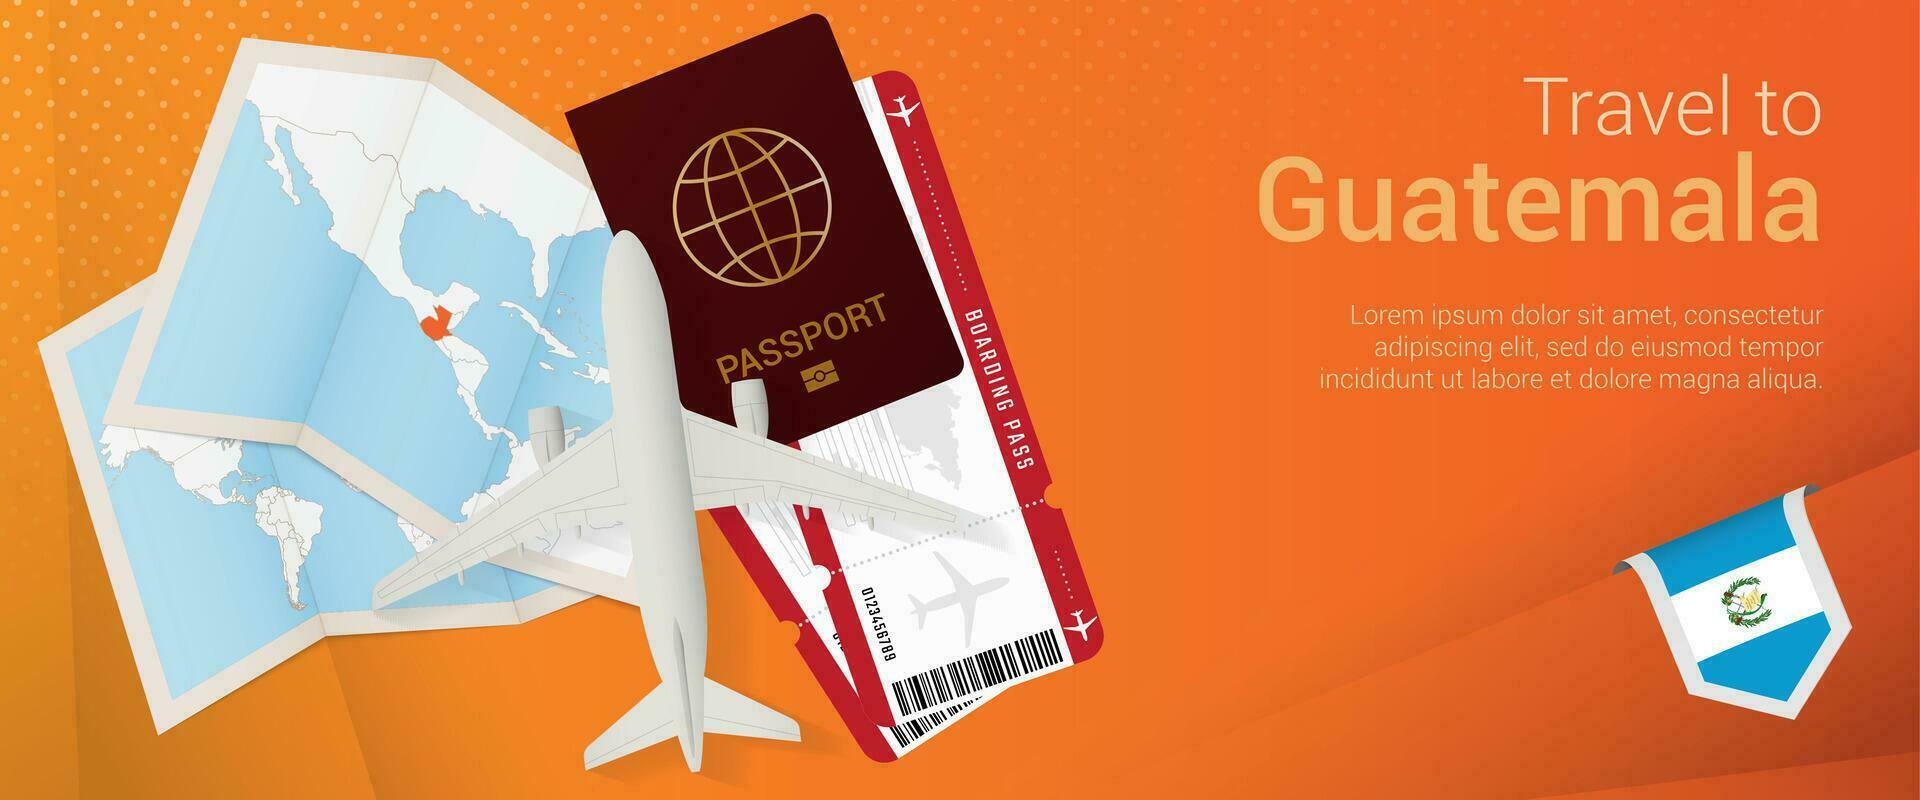 Reise zu Guatemala Pop-under Banner. Ausflug Banner mit Reisepass, Eintrittskarten, Flugzeug, Einsteigen passieren, Karte und Flagge von Guatemala. vektor